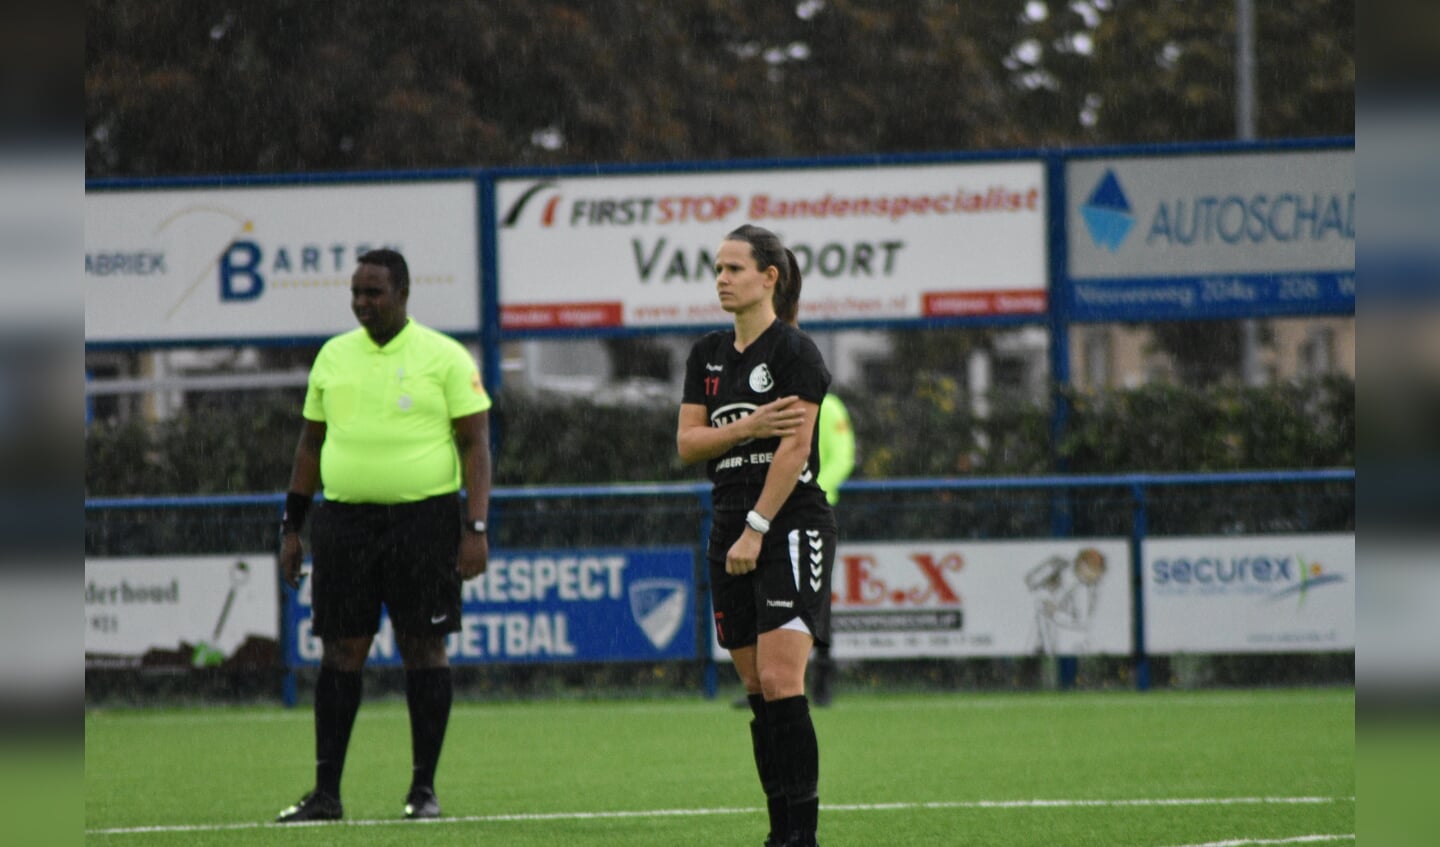 Daphne van Kruistum scoorde maar liefst 5 doelpunten